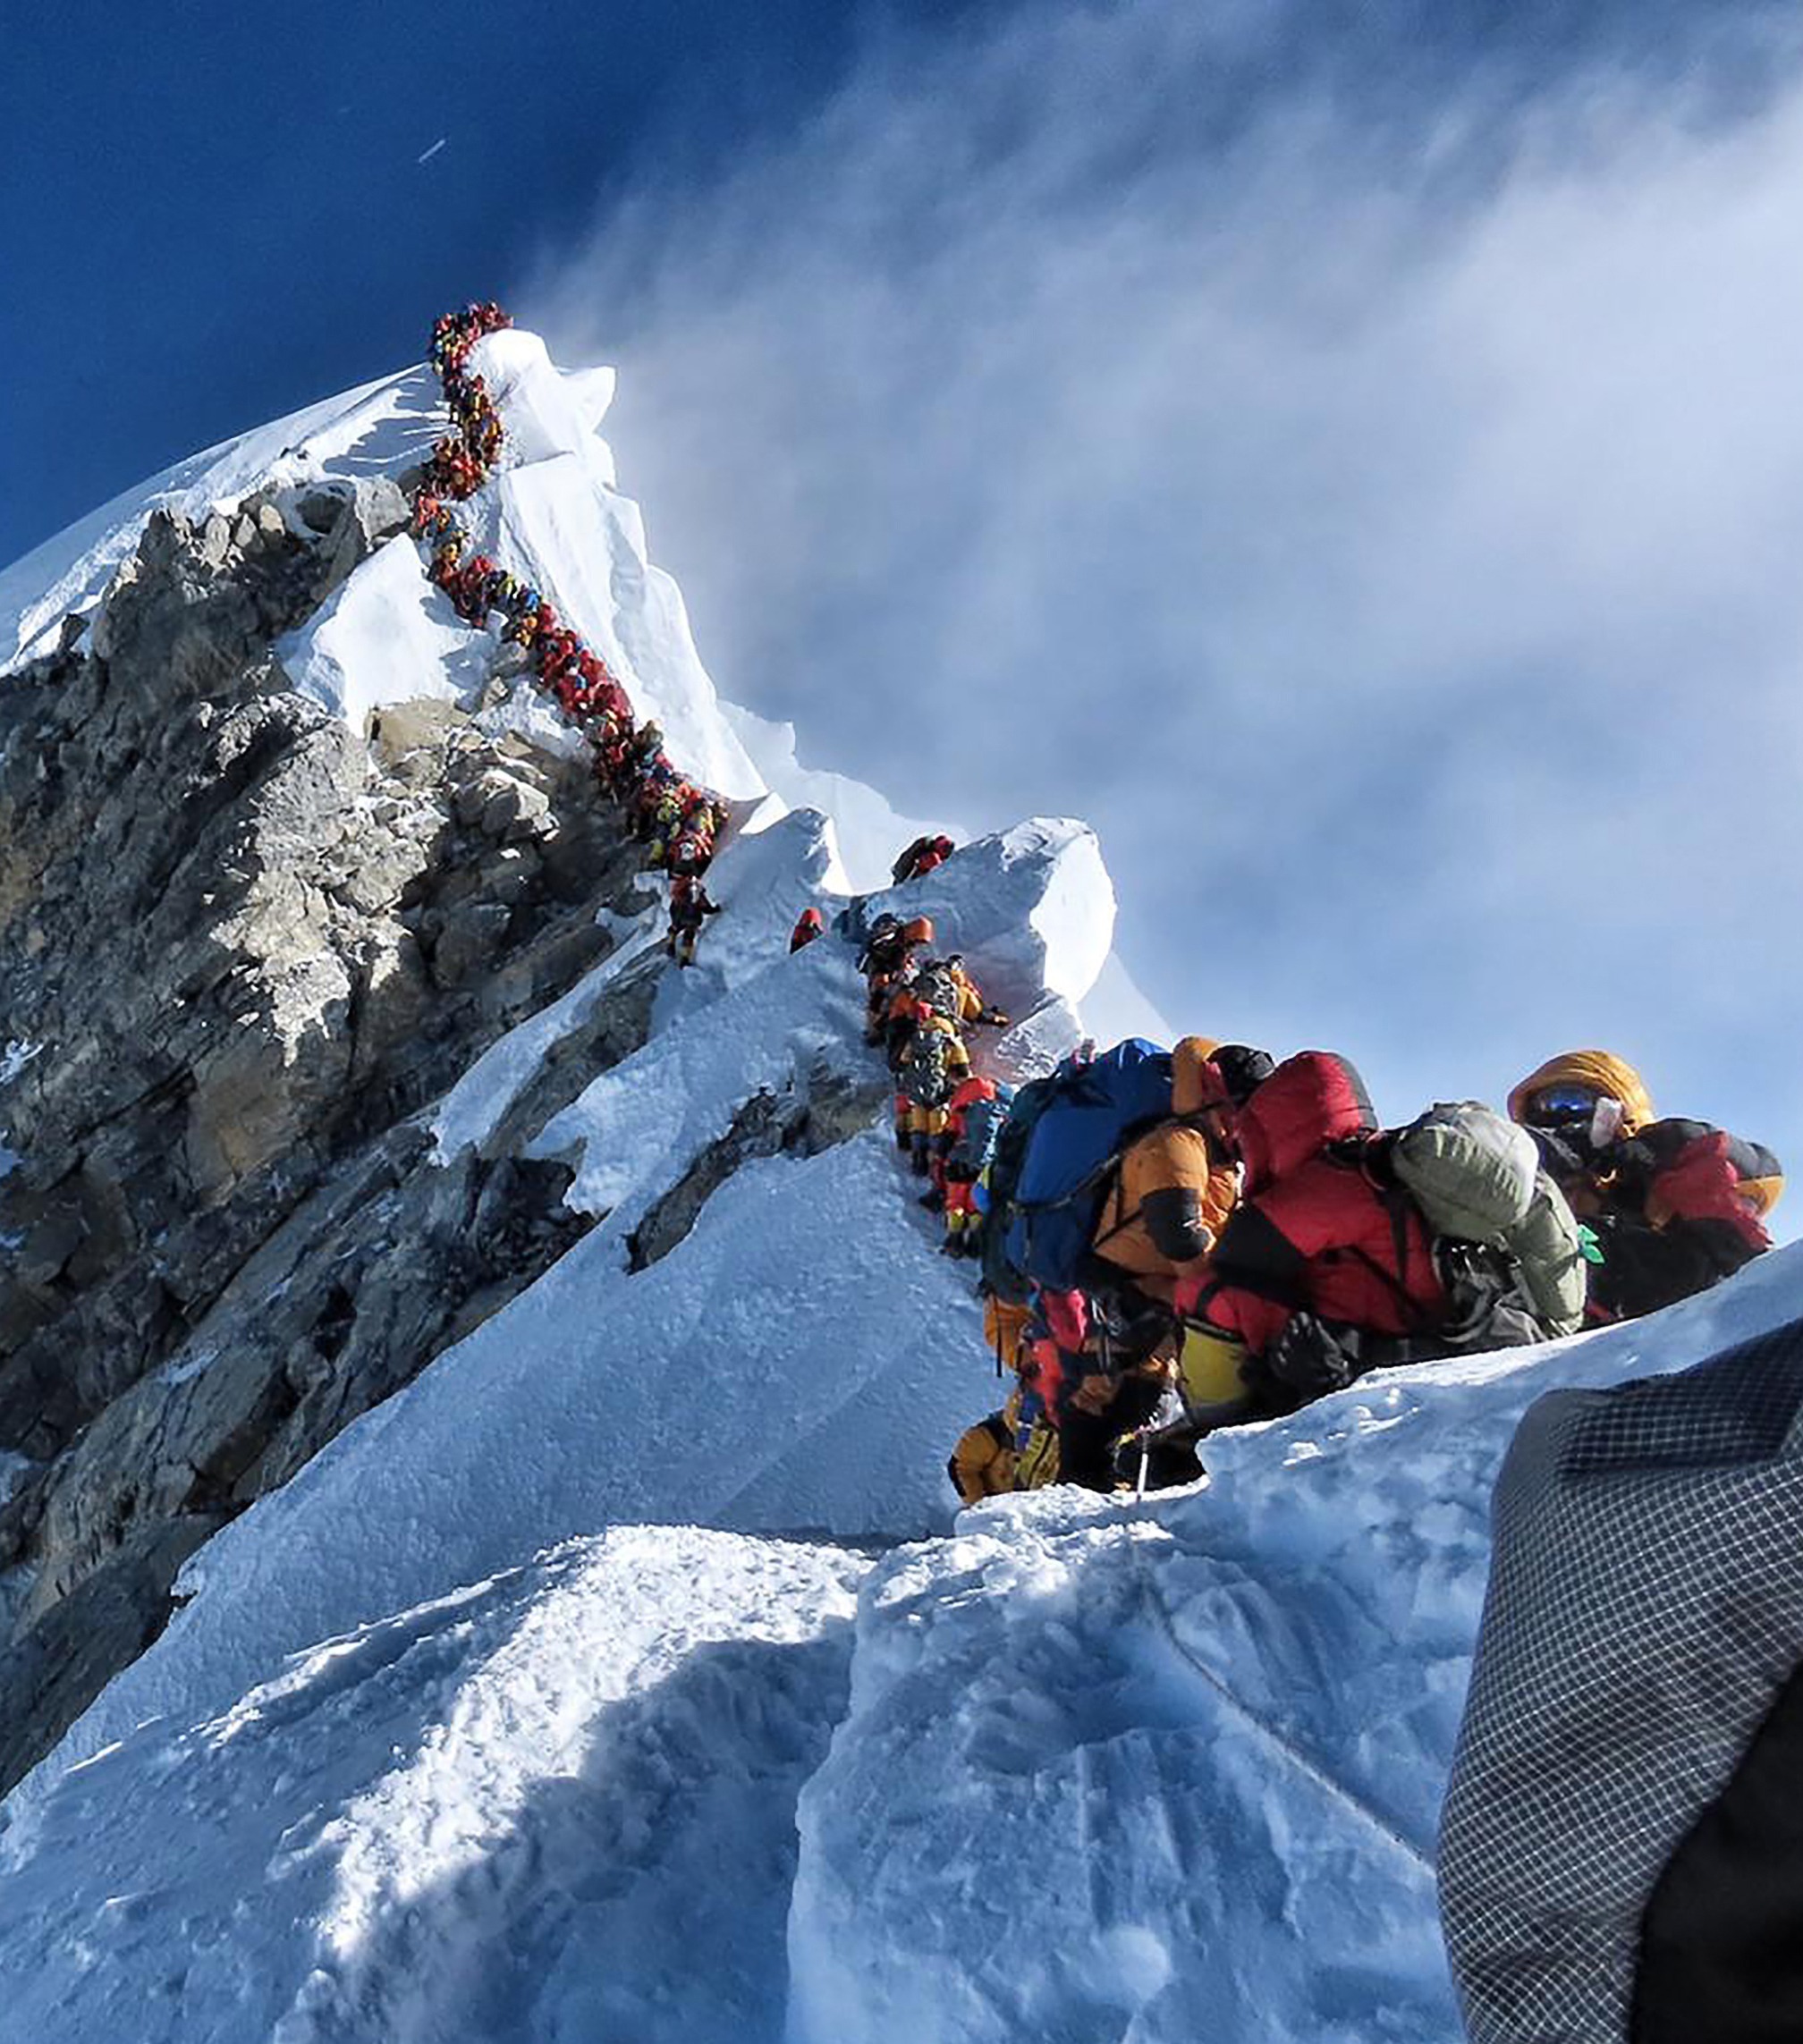 尼泊尔先锋探险公司表示，一名来自美国的55岁登山者唐纳德·卡什在峰顶拍照时因高原反应突然晕倒，并在被送下山的途中不幸死亡。尼泊尔《加德满都邮报》报道称，来自印度的库尔卡尼(Anjali Kulkarni)与达斯(Kalpana Das)22日当天分别发生意外，不幸丧命。该报纸表示，海拔8000米以上的山区通常有“死亡地带”之称，所以3名登山者的不幸丧生很可能与人们在这里排长队有关。图为堵在珠峰上的登山者。